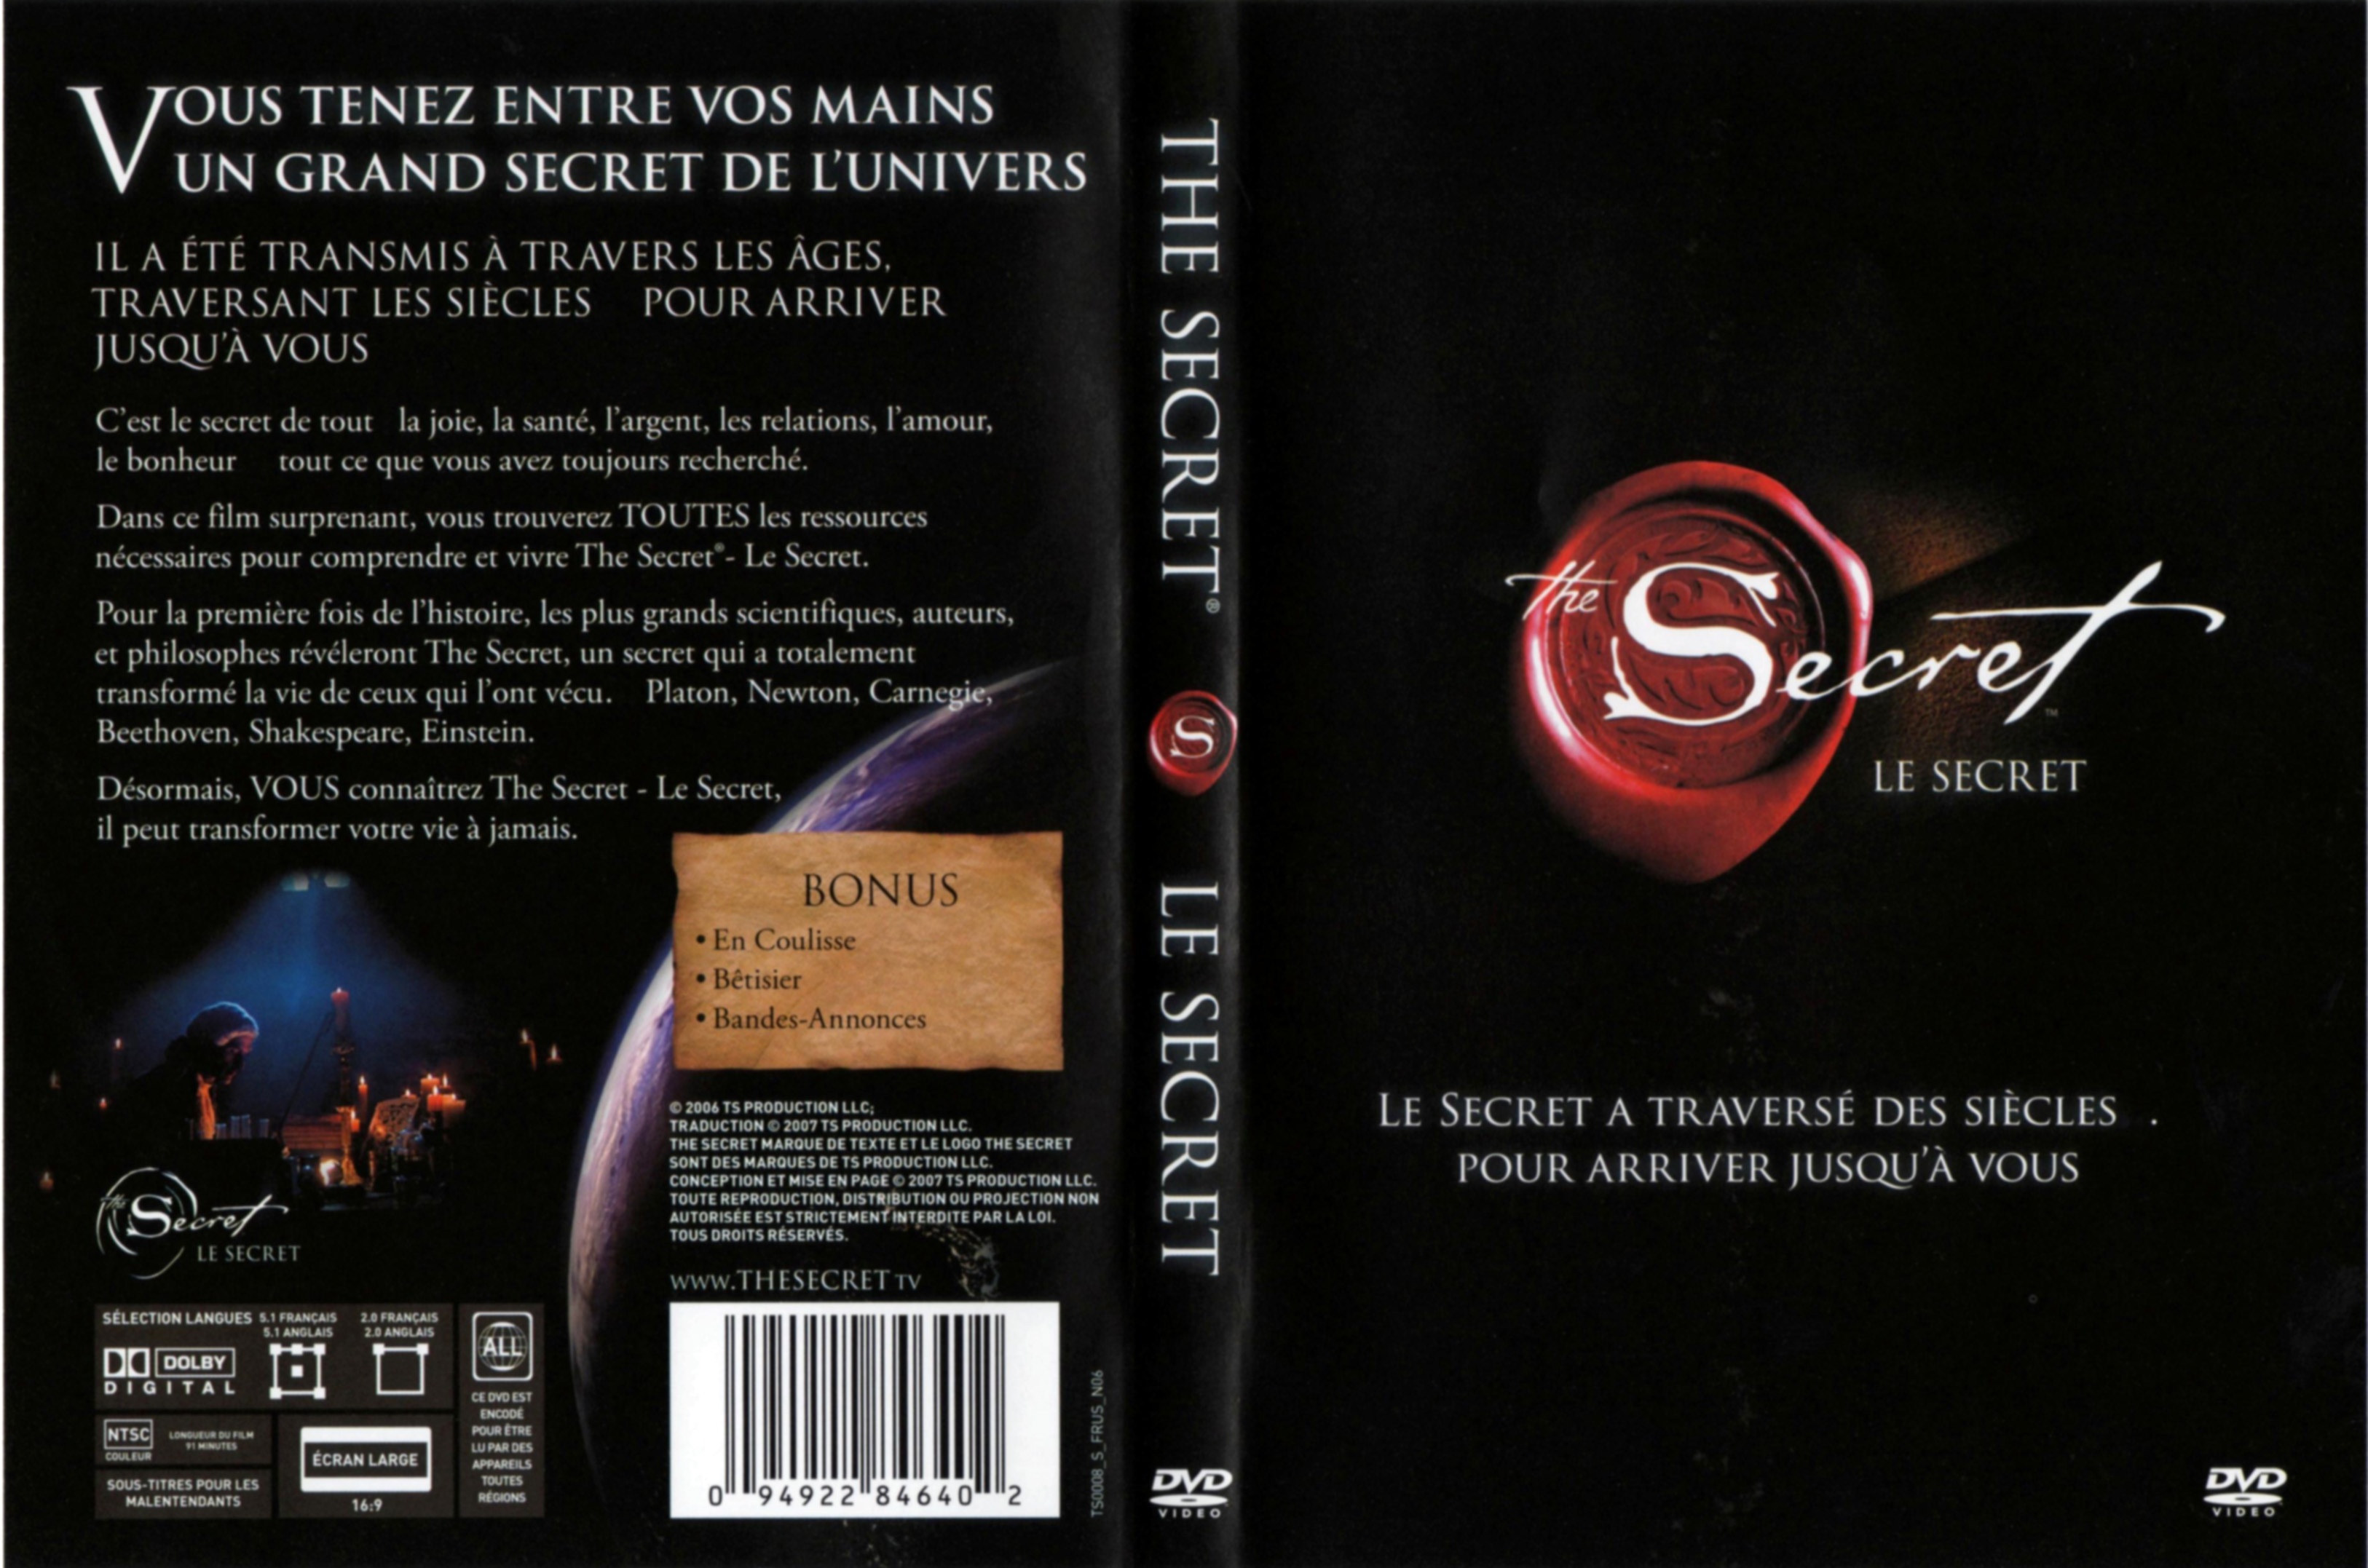 Jaquette DVD Le secret (DOC)